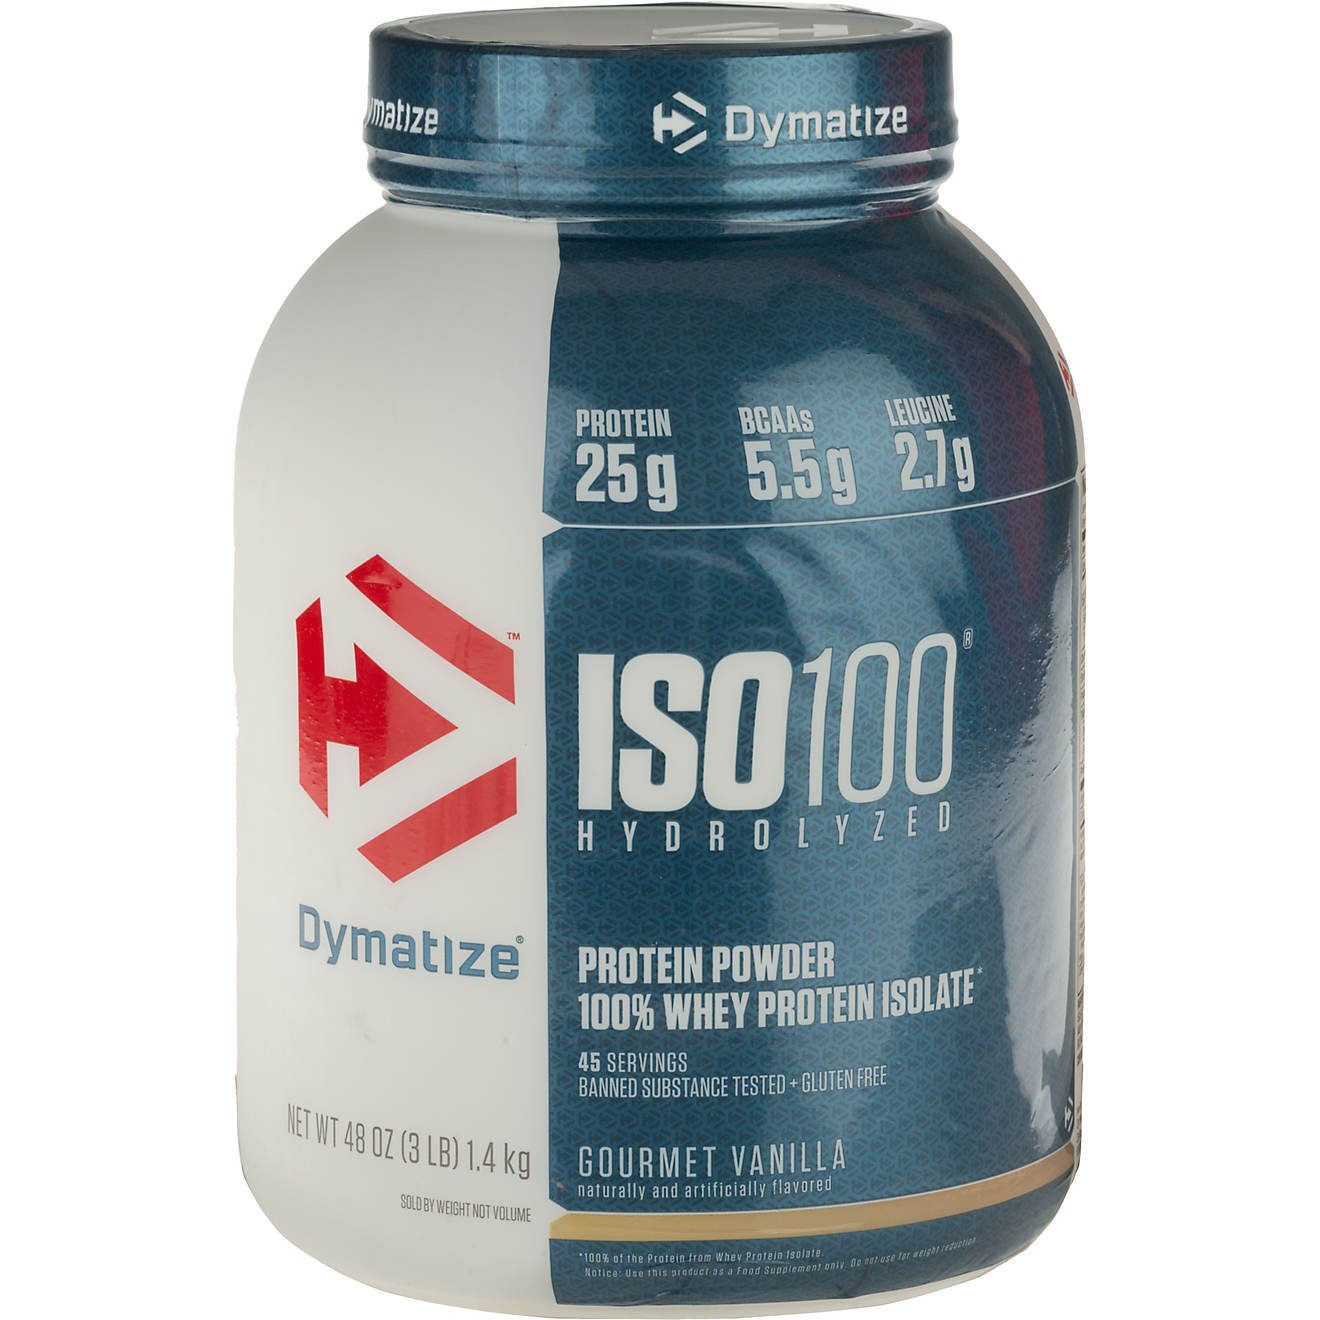 Протеин c и s. Диматайз ИСО 100. Протеин ISO one. ISO 600 Zero Protein Powder.